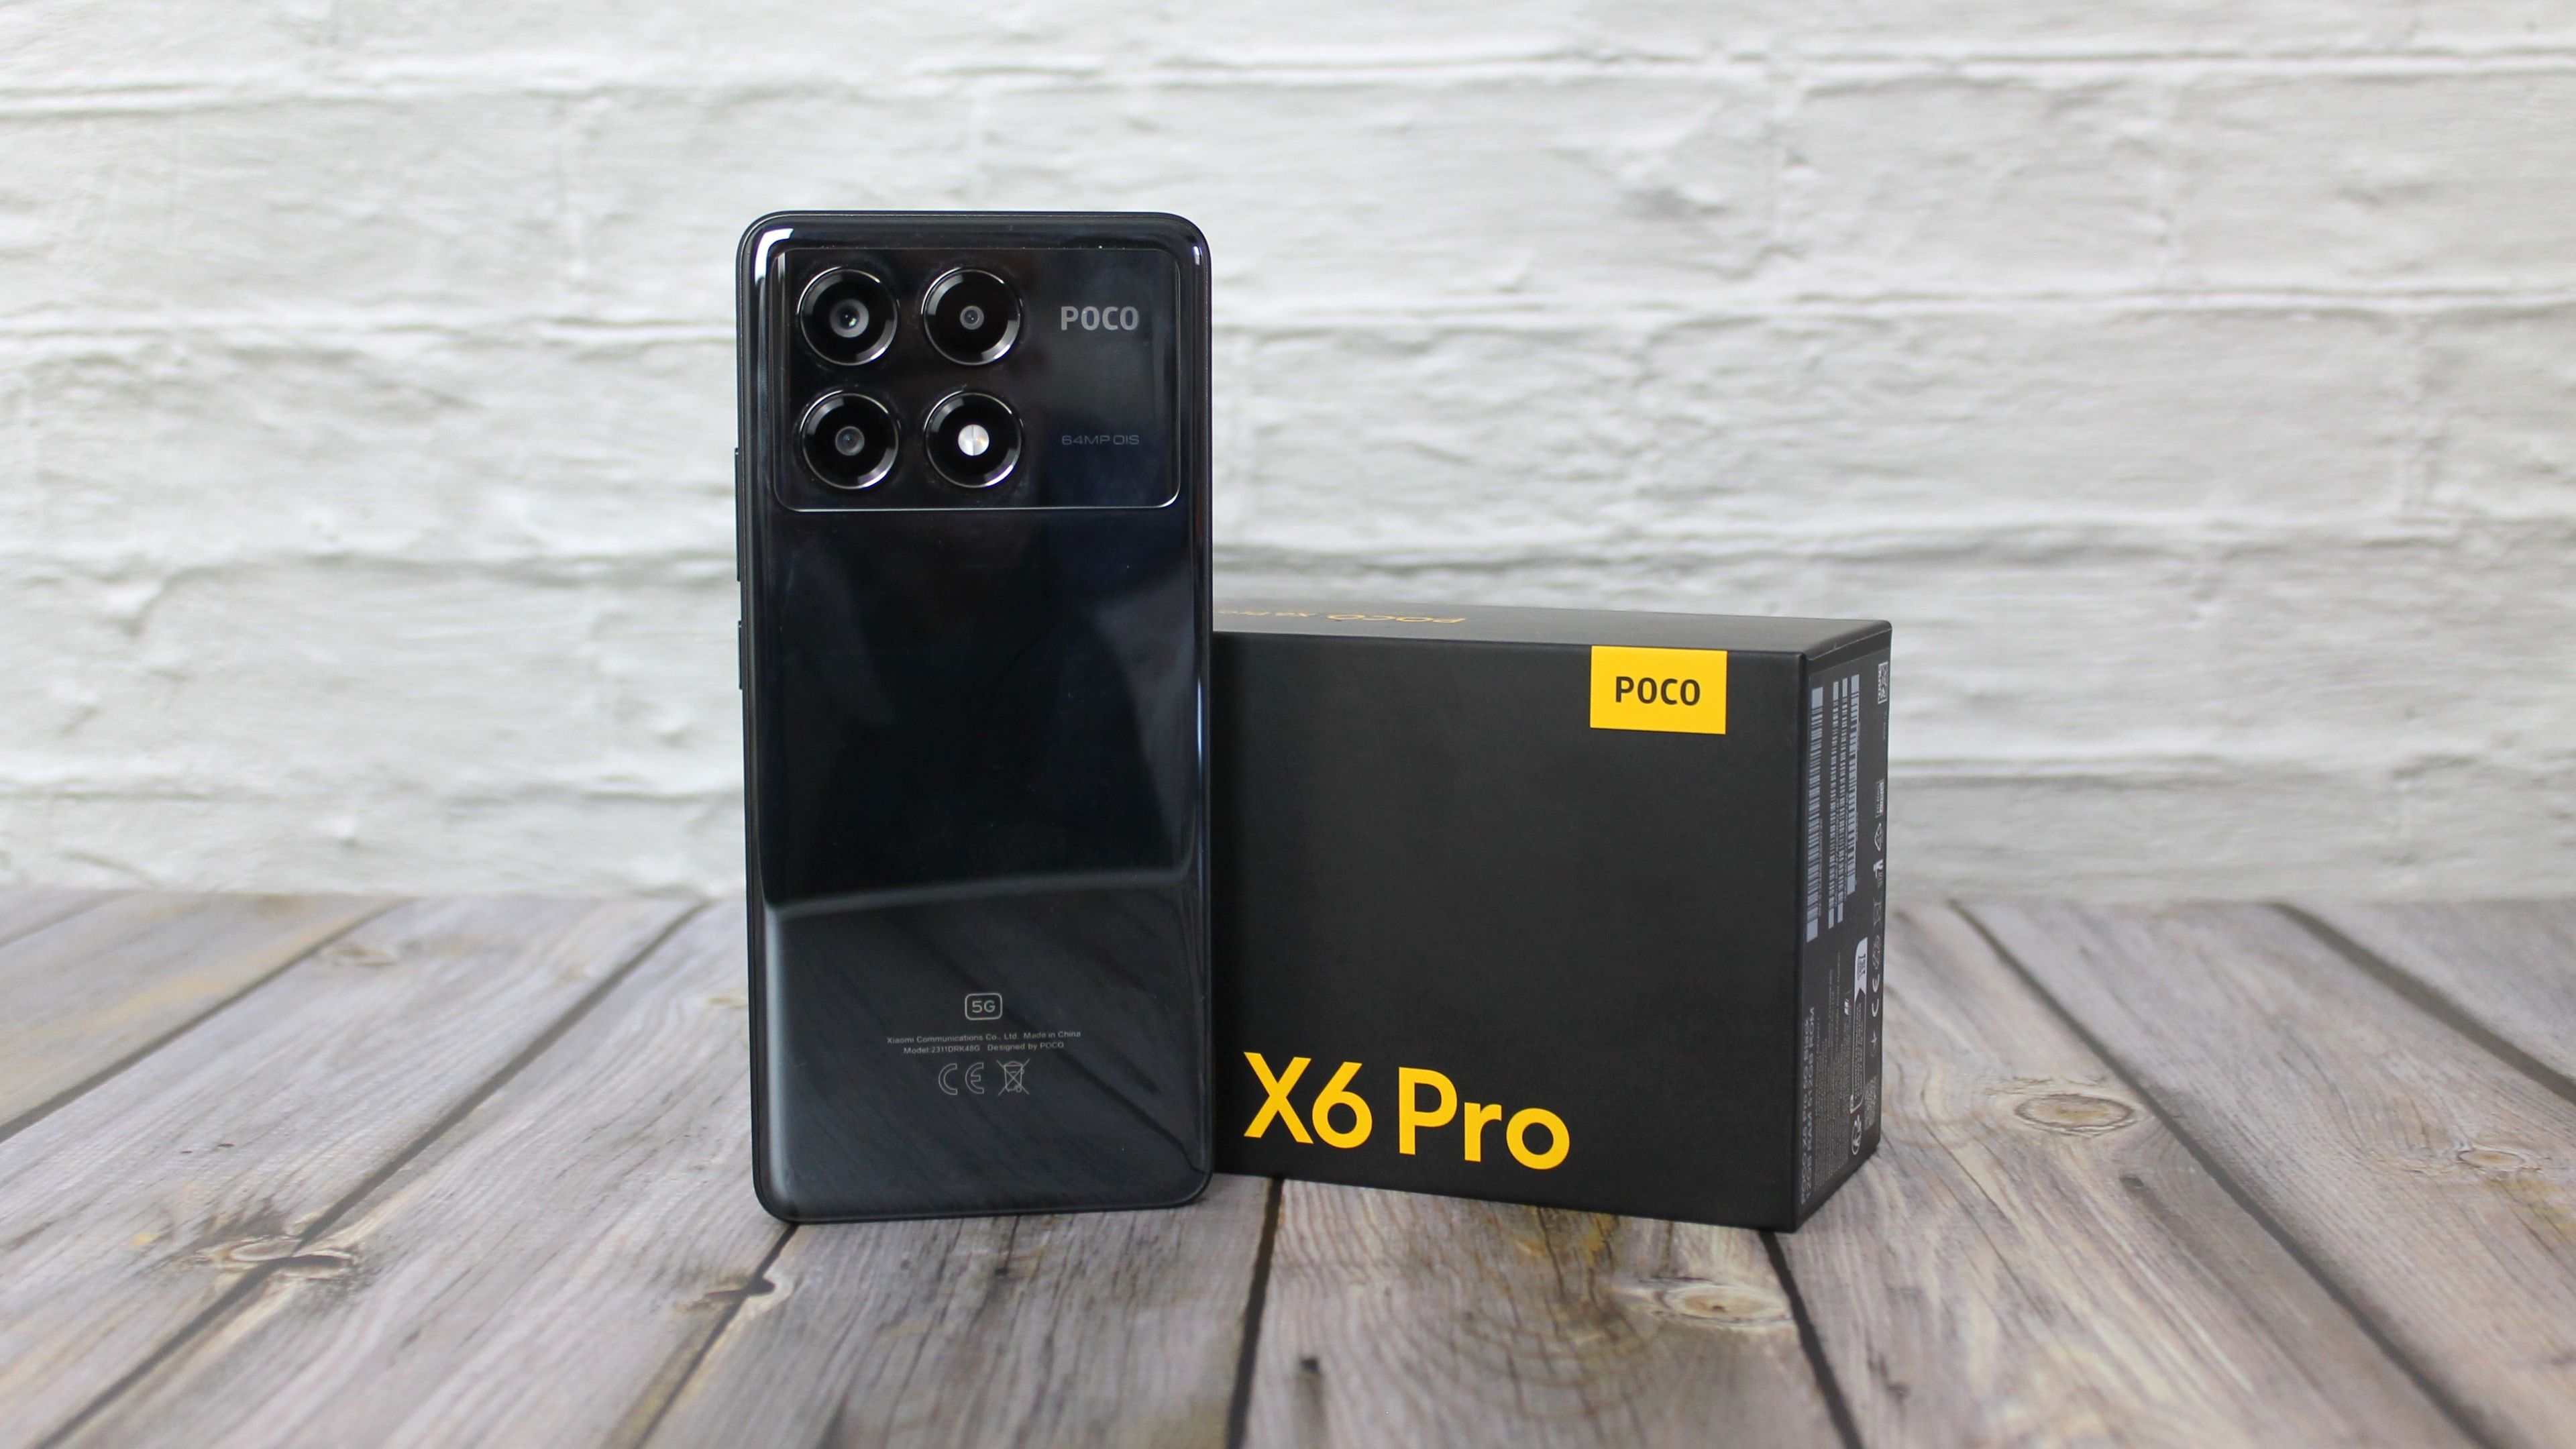 He probado el POCO X6 Pro: uno de los mejores móviles de gama